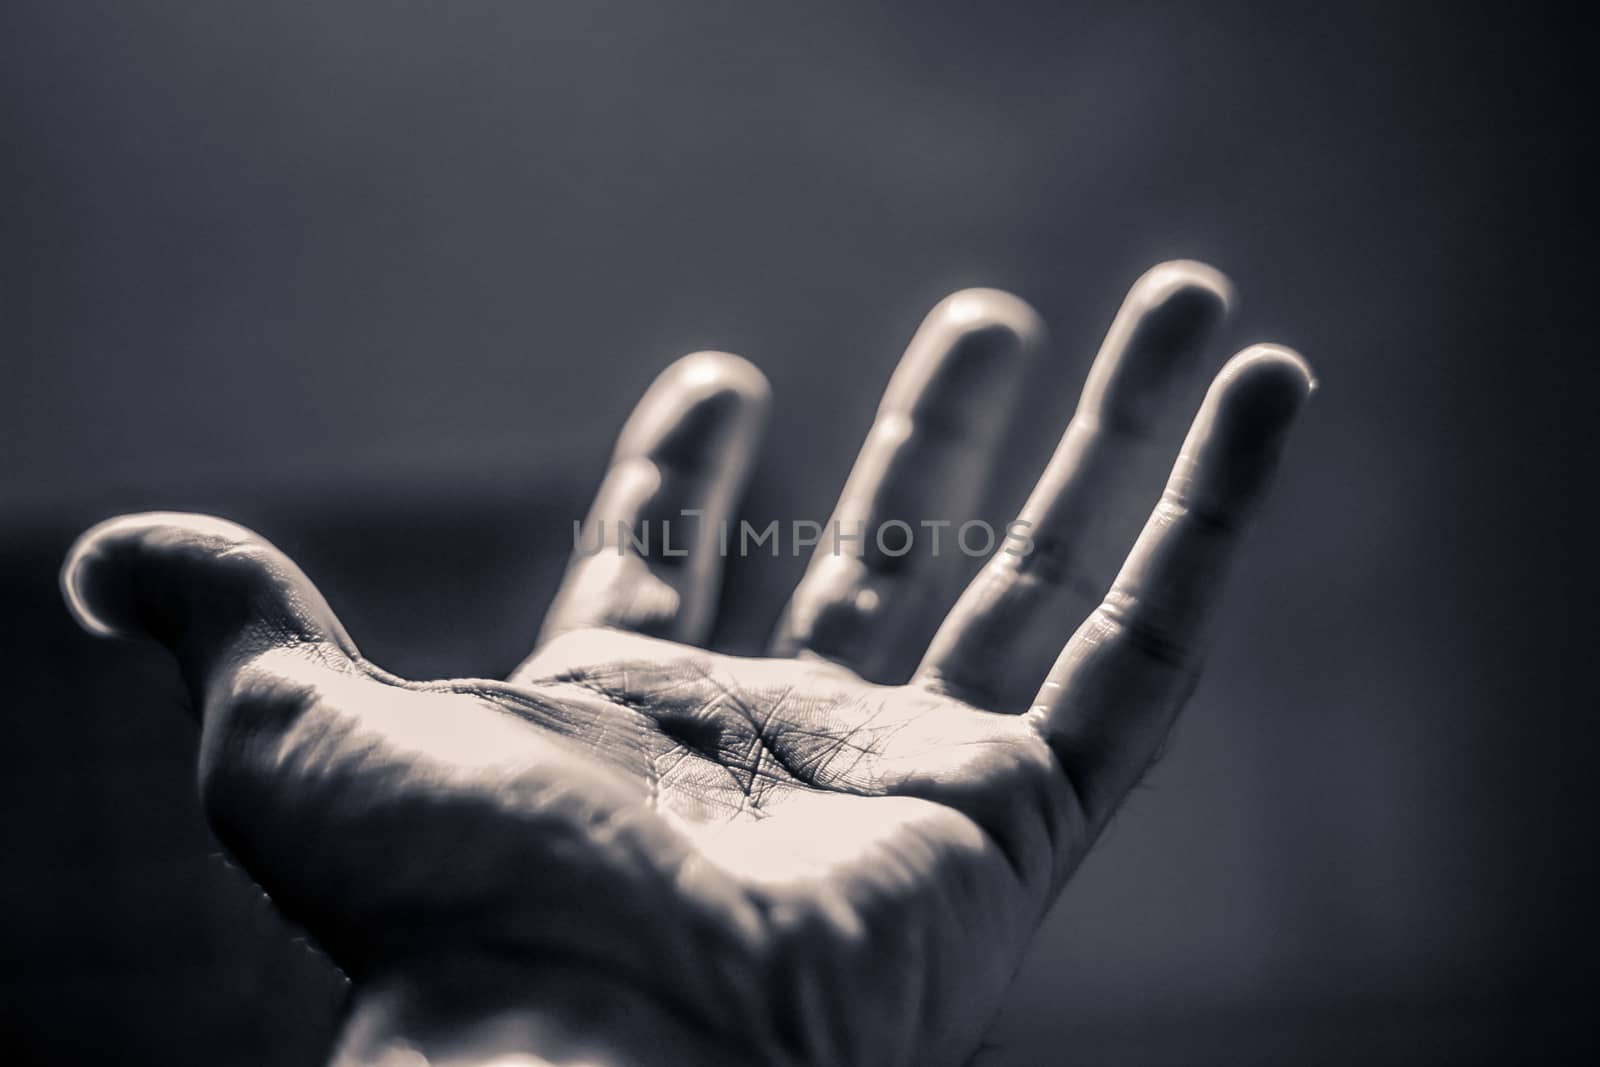 Photograph of an open human hand